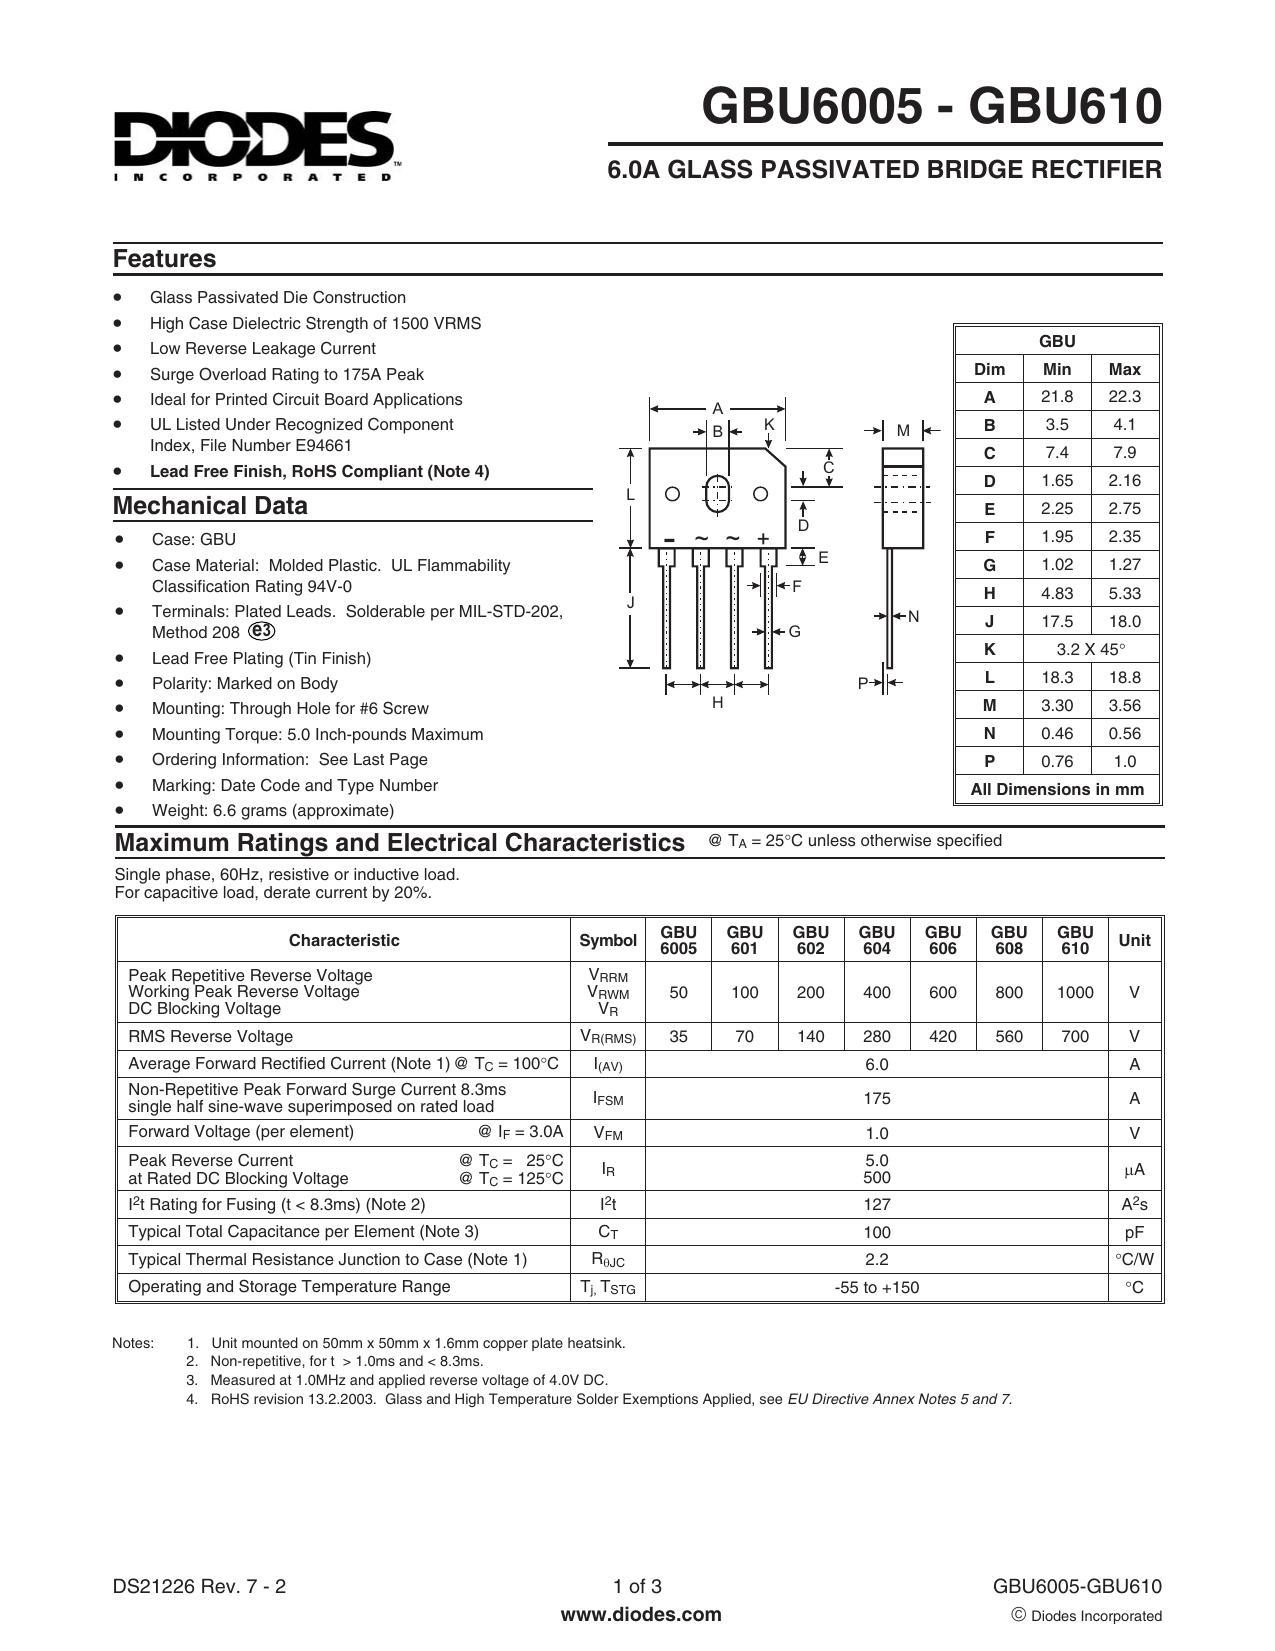 gbu6o05-gbu61o-60a-glass-passivated-bridge-rectifier-datasheet.pdf